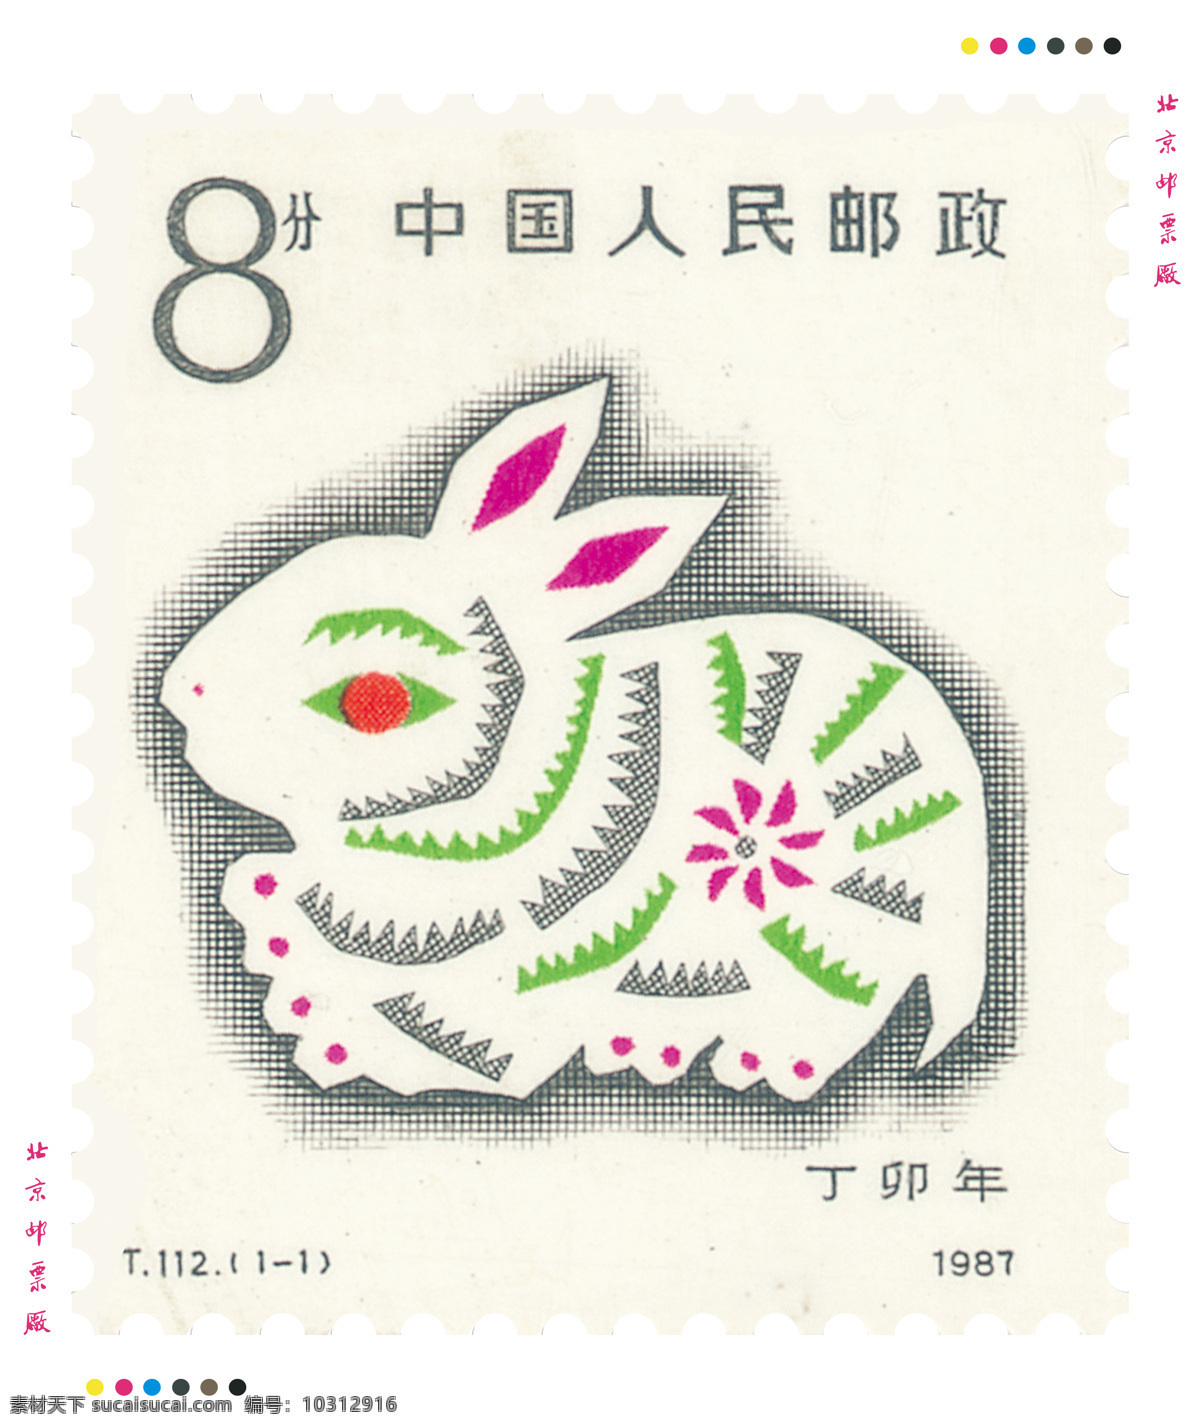 一轮 生肖 兔 邮票 生肖邮票 第一轮生肖 兔票 t112 丁卯年